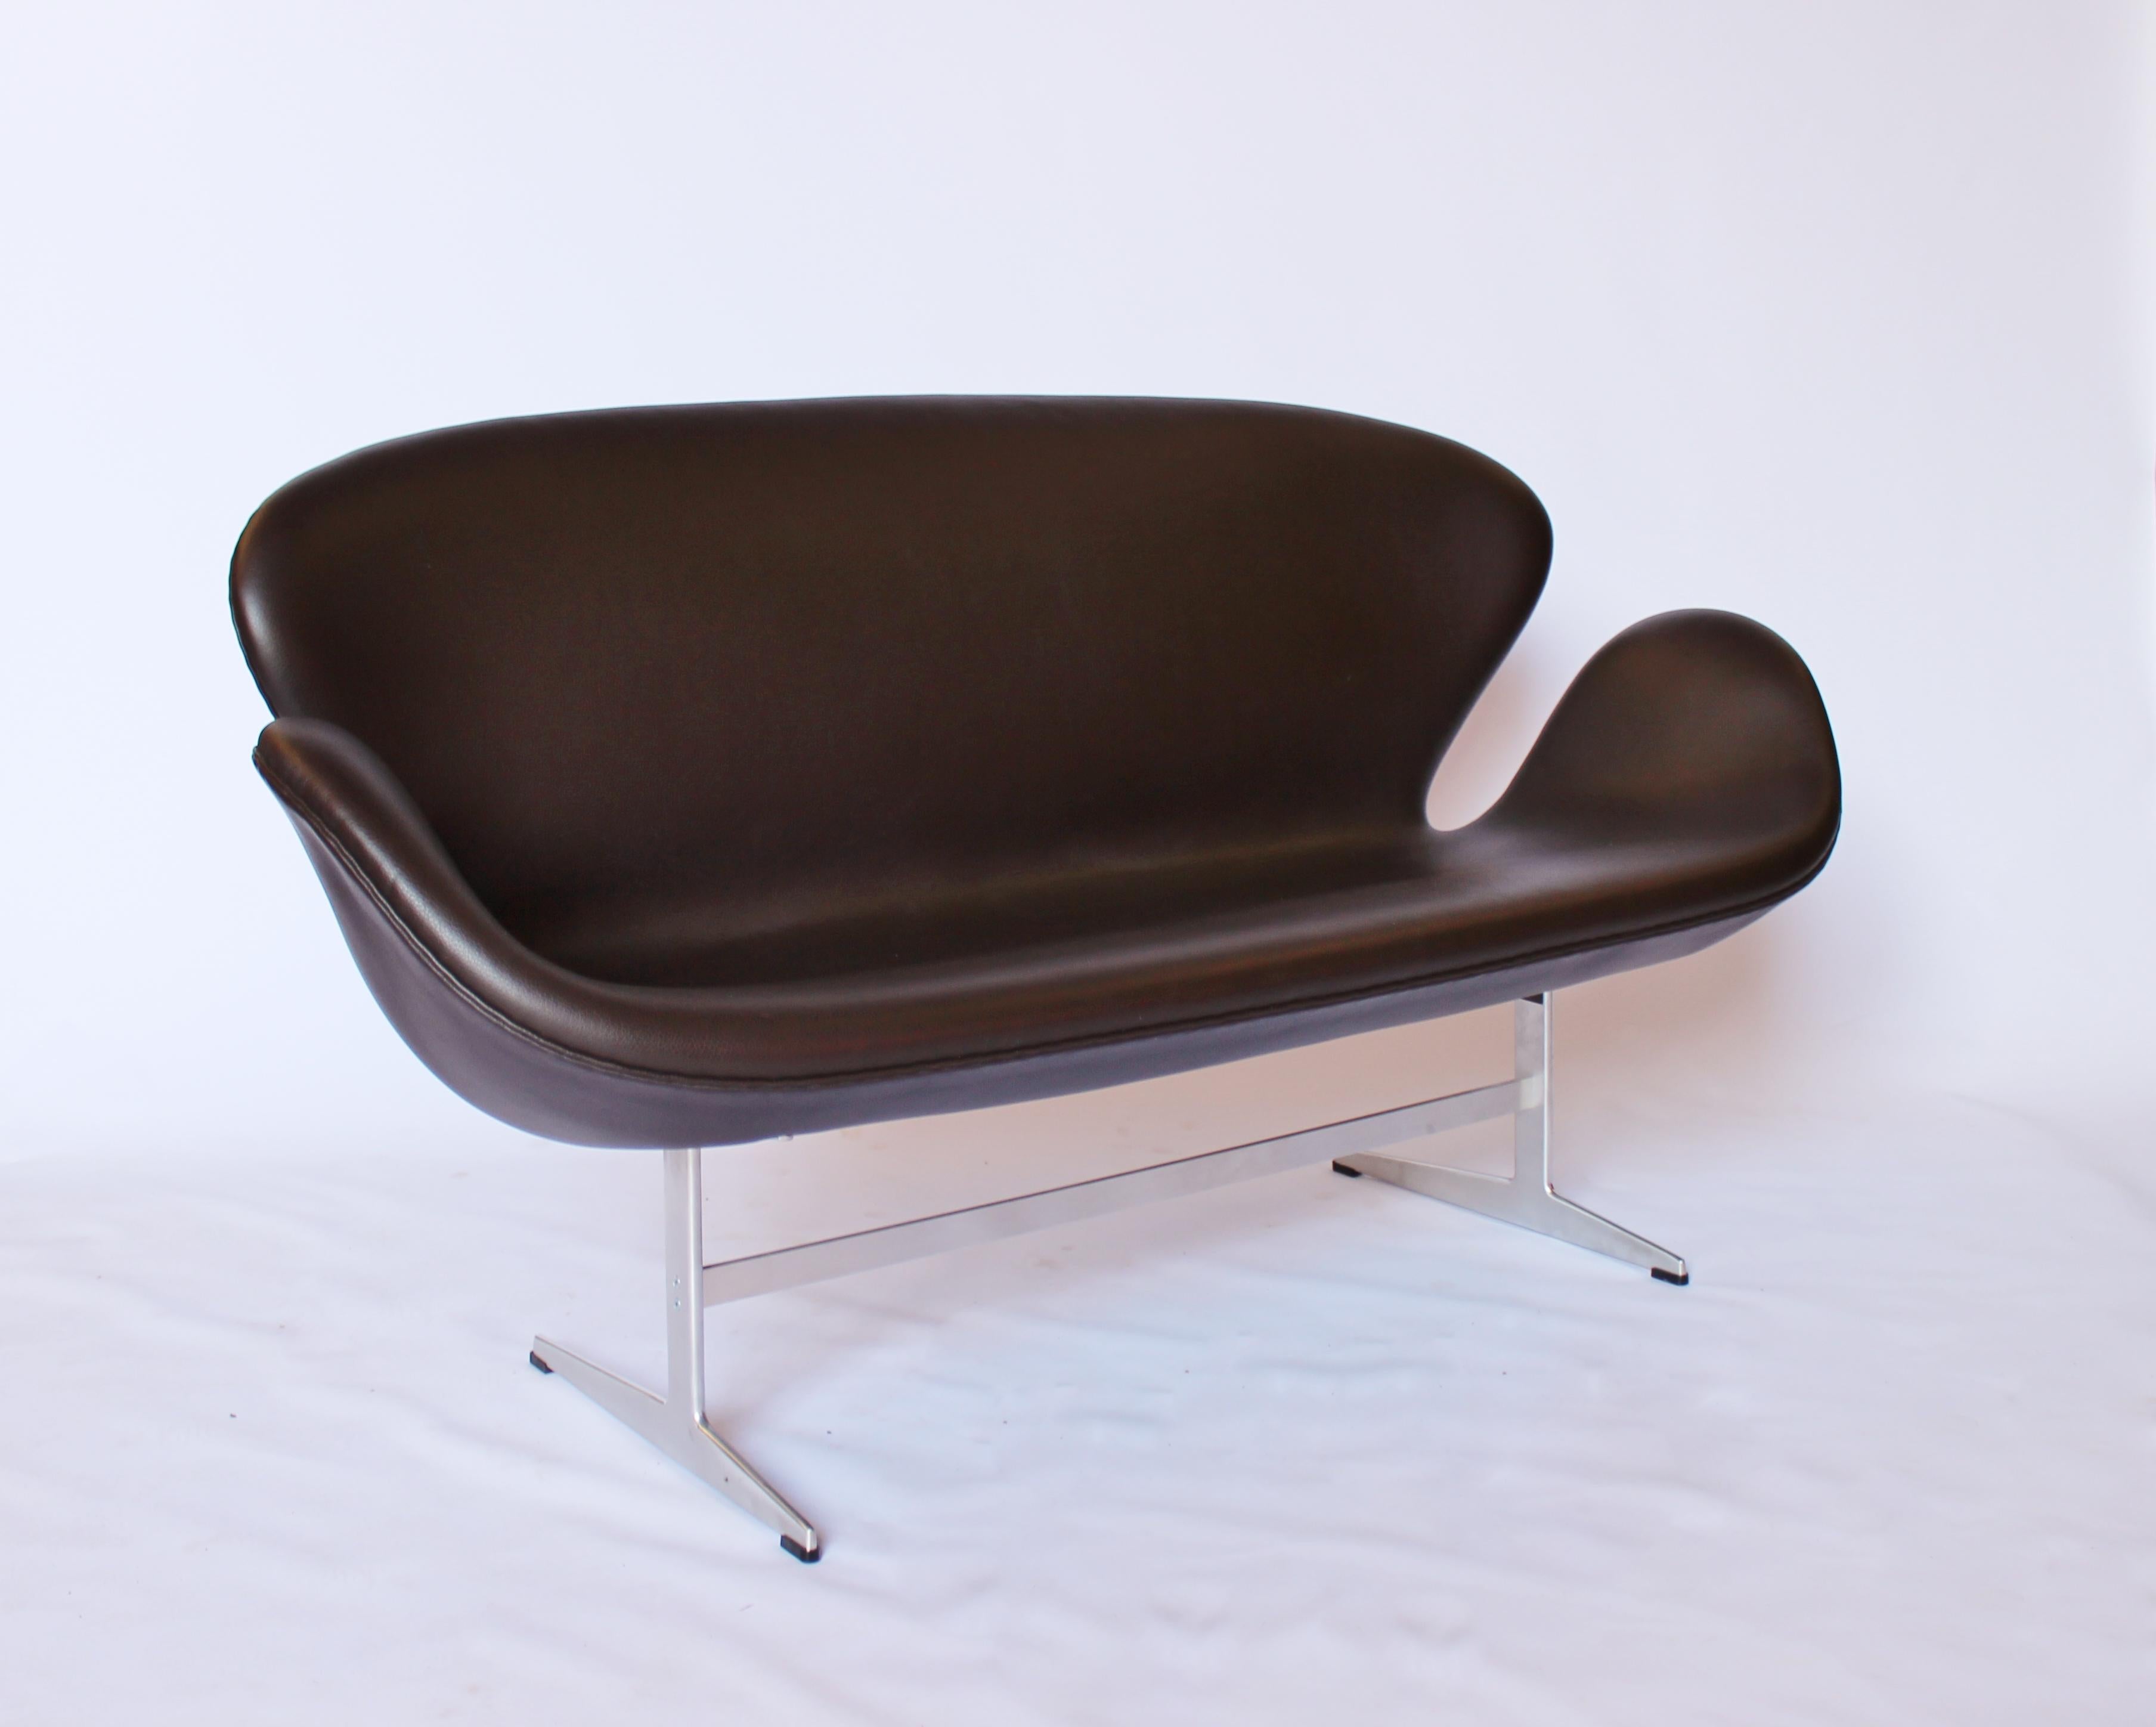 Le Swan Sofa, modèle 3321, est un canapé deux places conçu par l'architecte et designer danois Arne Jacobsen dans les années 1960. Il présente un design épuré et incurvé qui rappelle la forme du cygne, et il est devenu un meuble emblématique dans